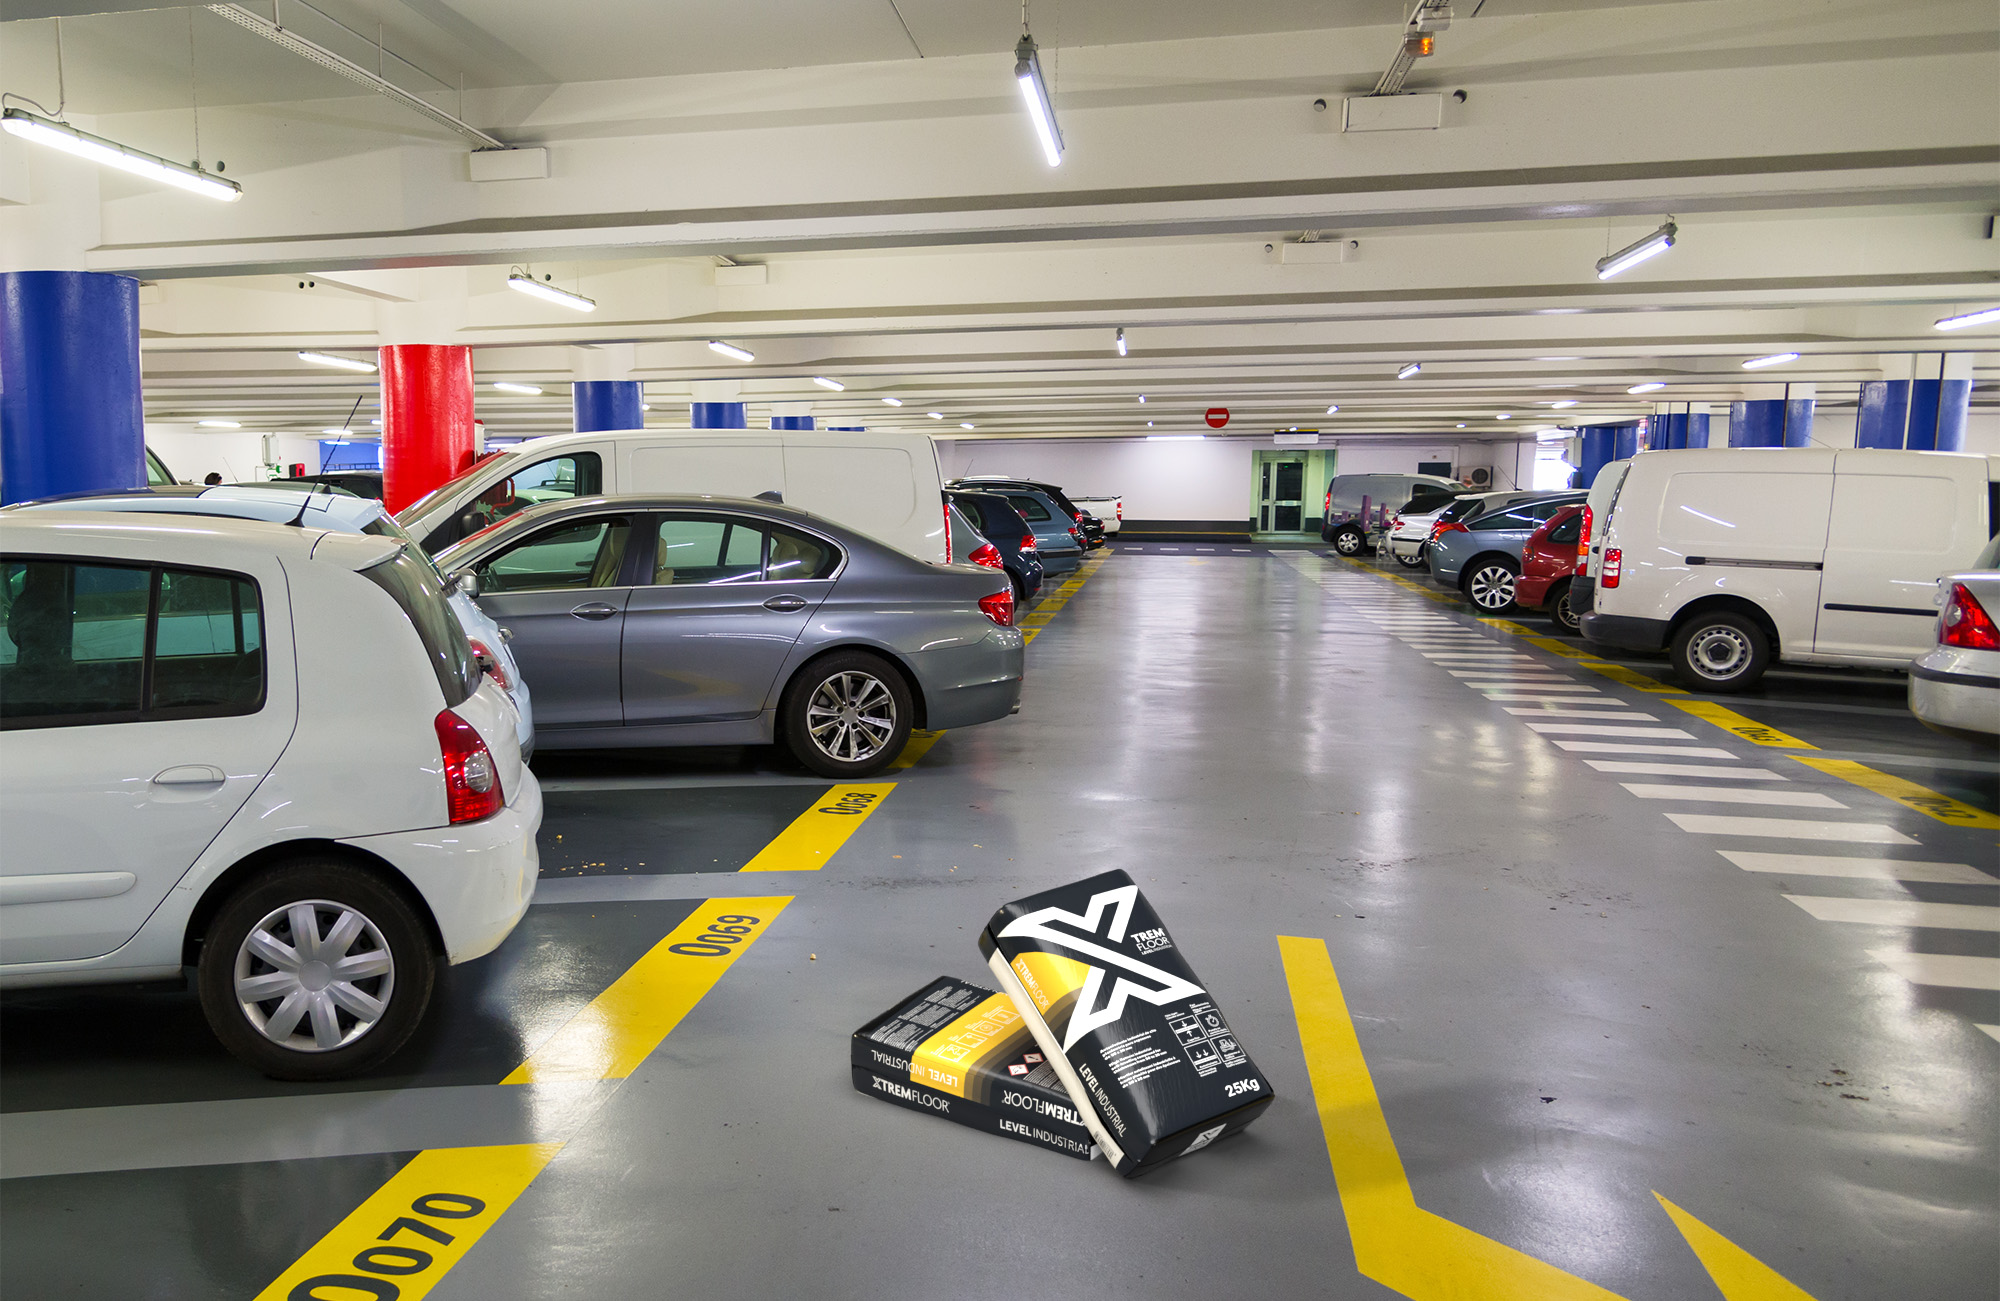   estacionamiento con autonivelante industrial XTREMFLOOR® Level Industrial en el pavimento